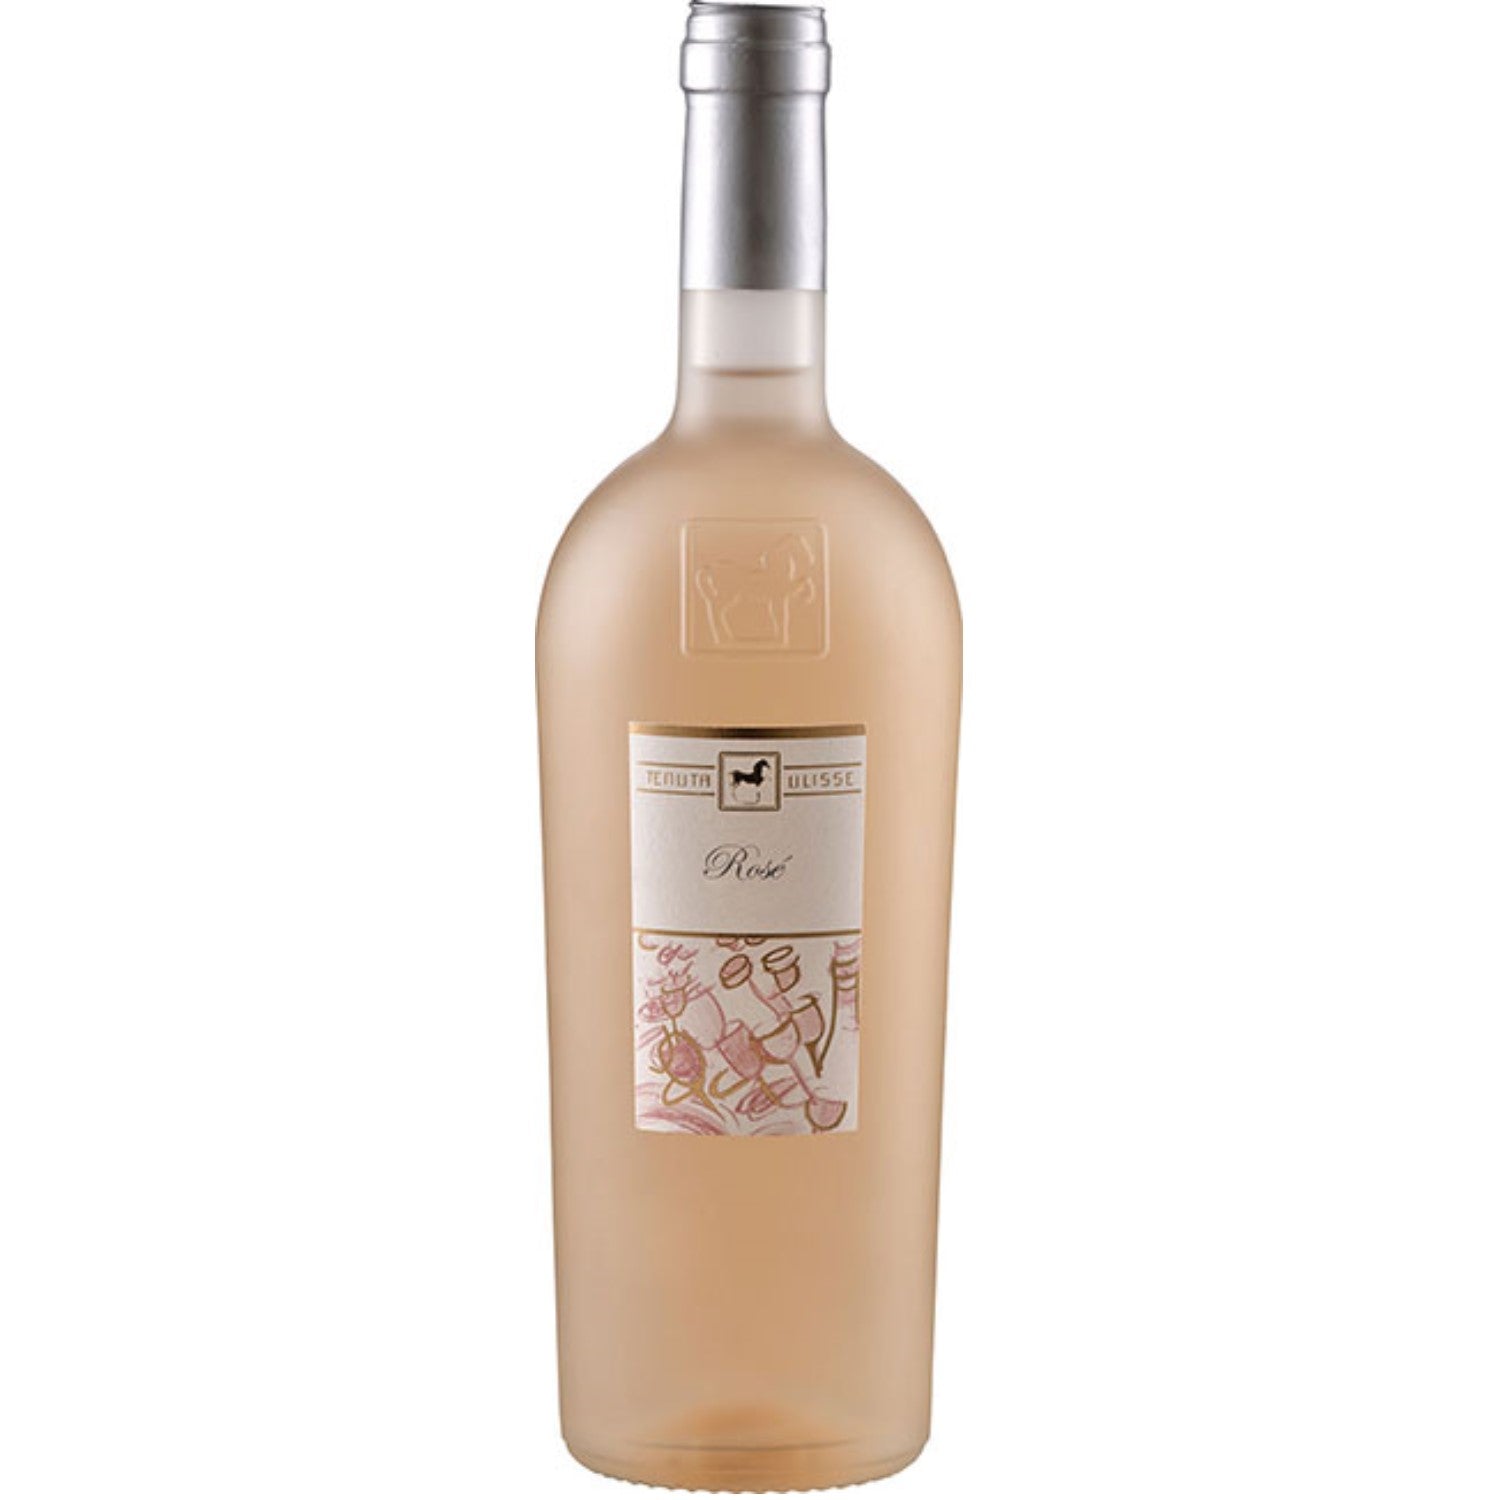 Tenuta Ulisse Linea Ulisse Selezione Roséwein Wein Trocken IGP Italien (6 x 0.75l) - Versanel -